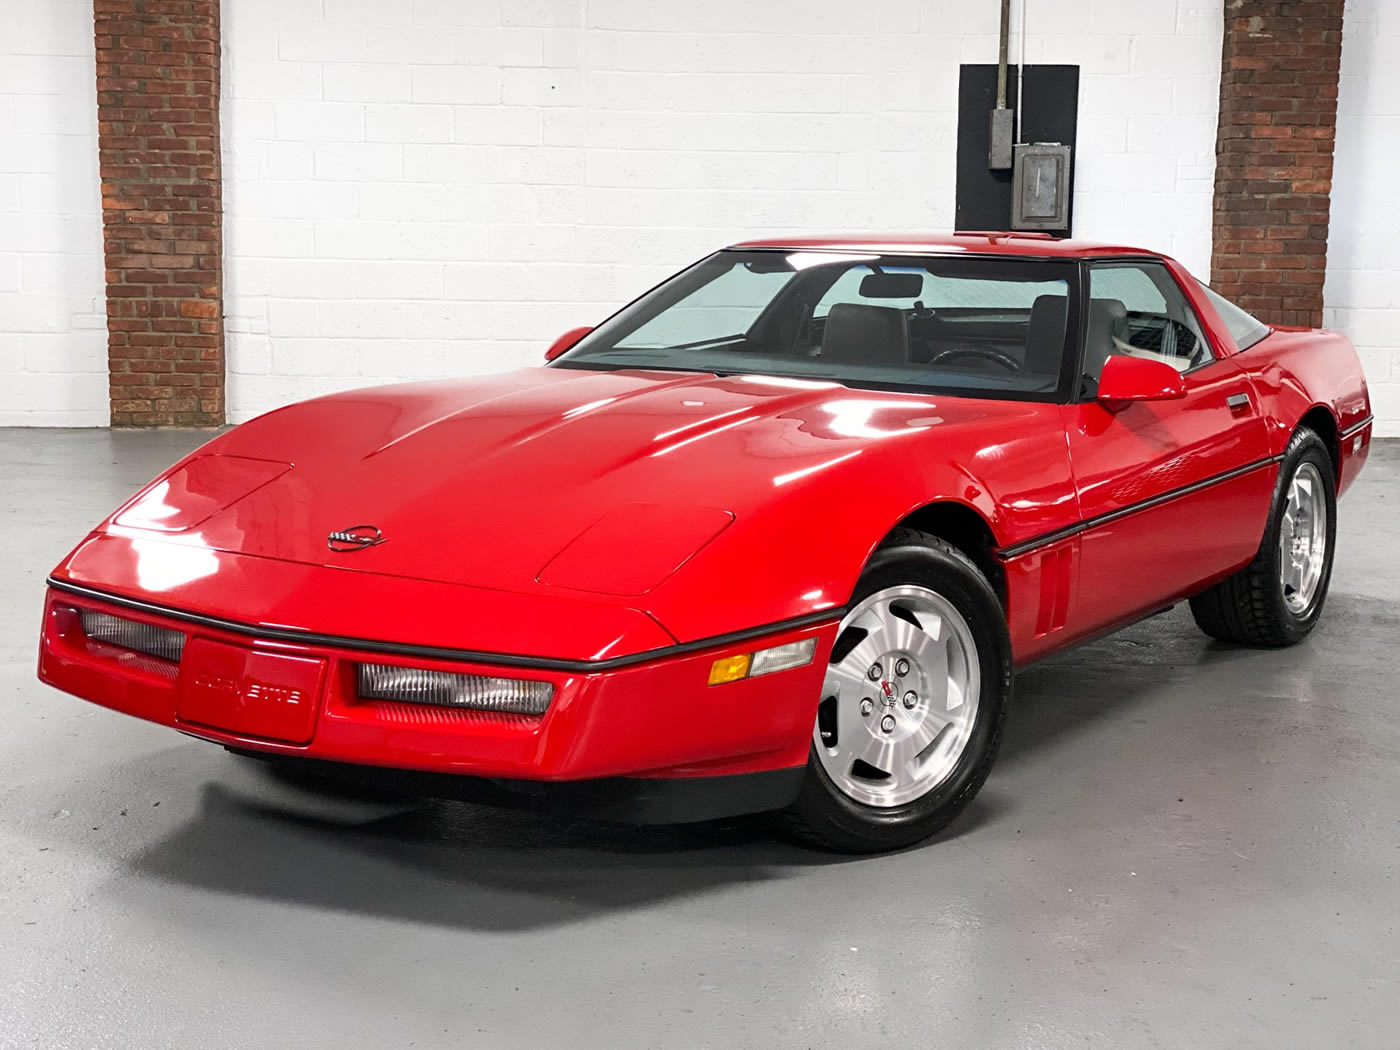 1988 Corvette Coupe in Bright Red